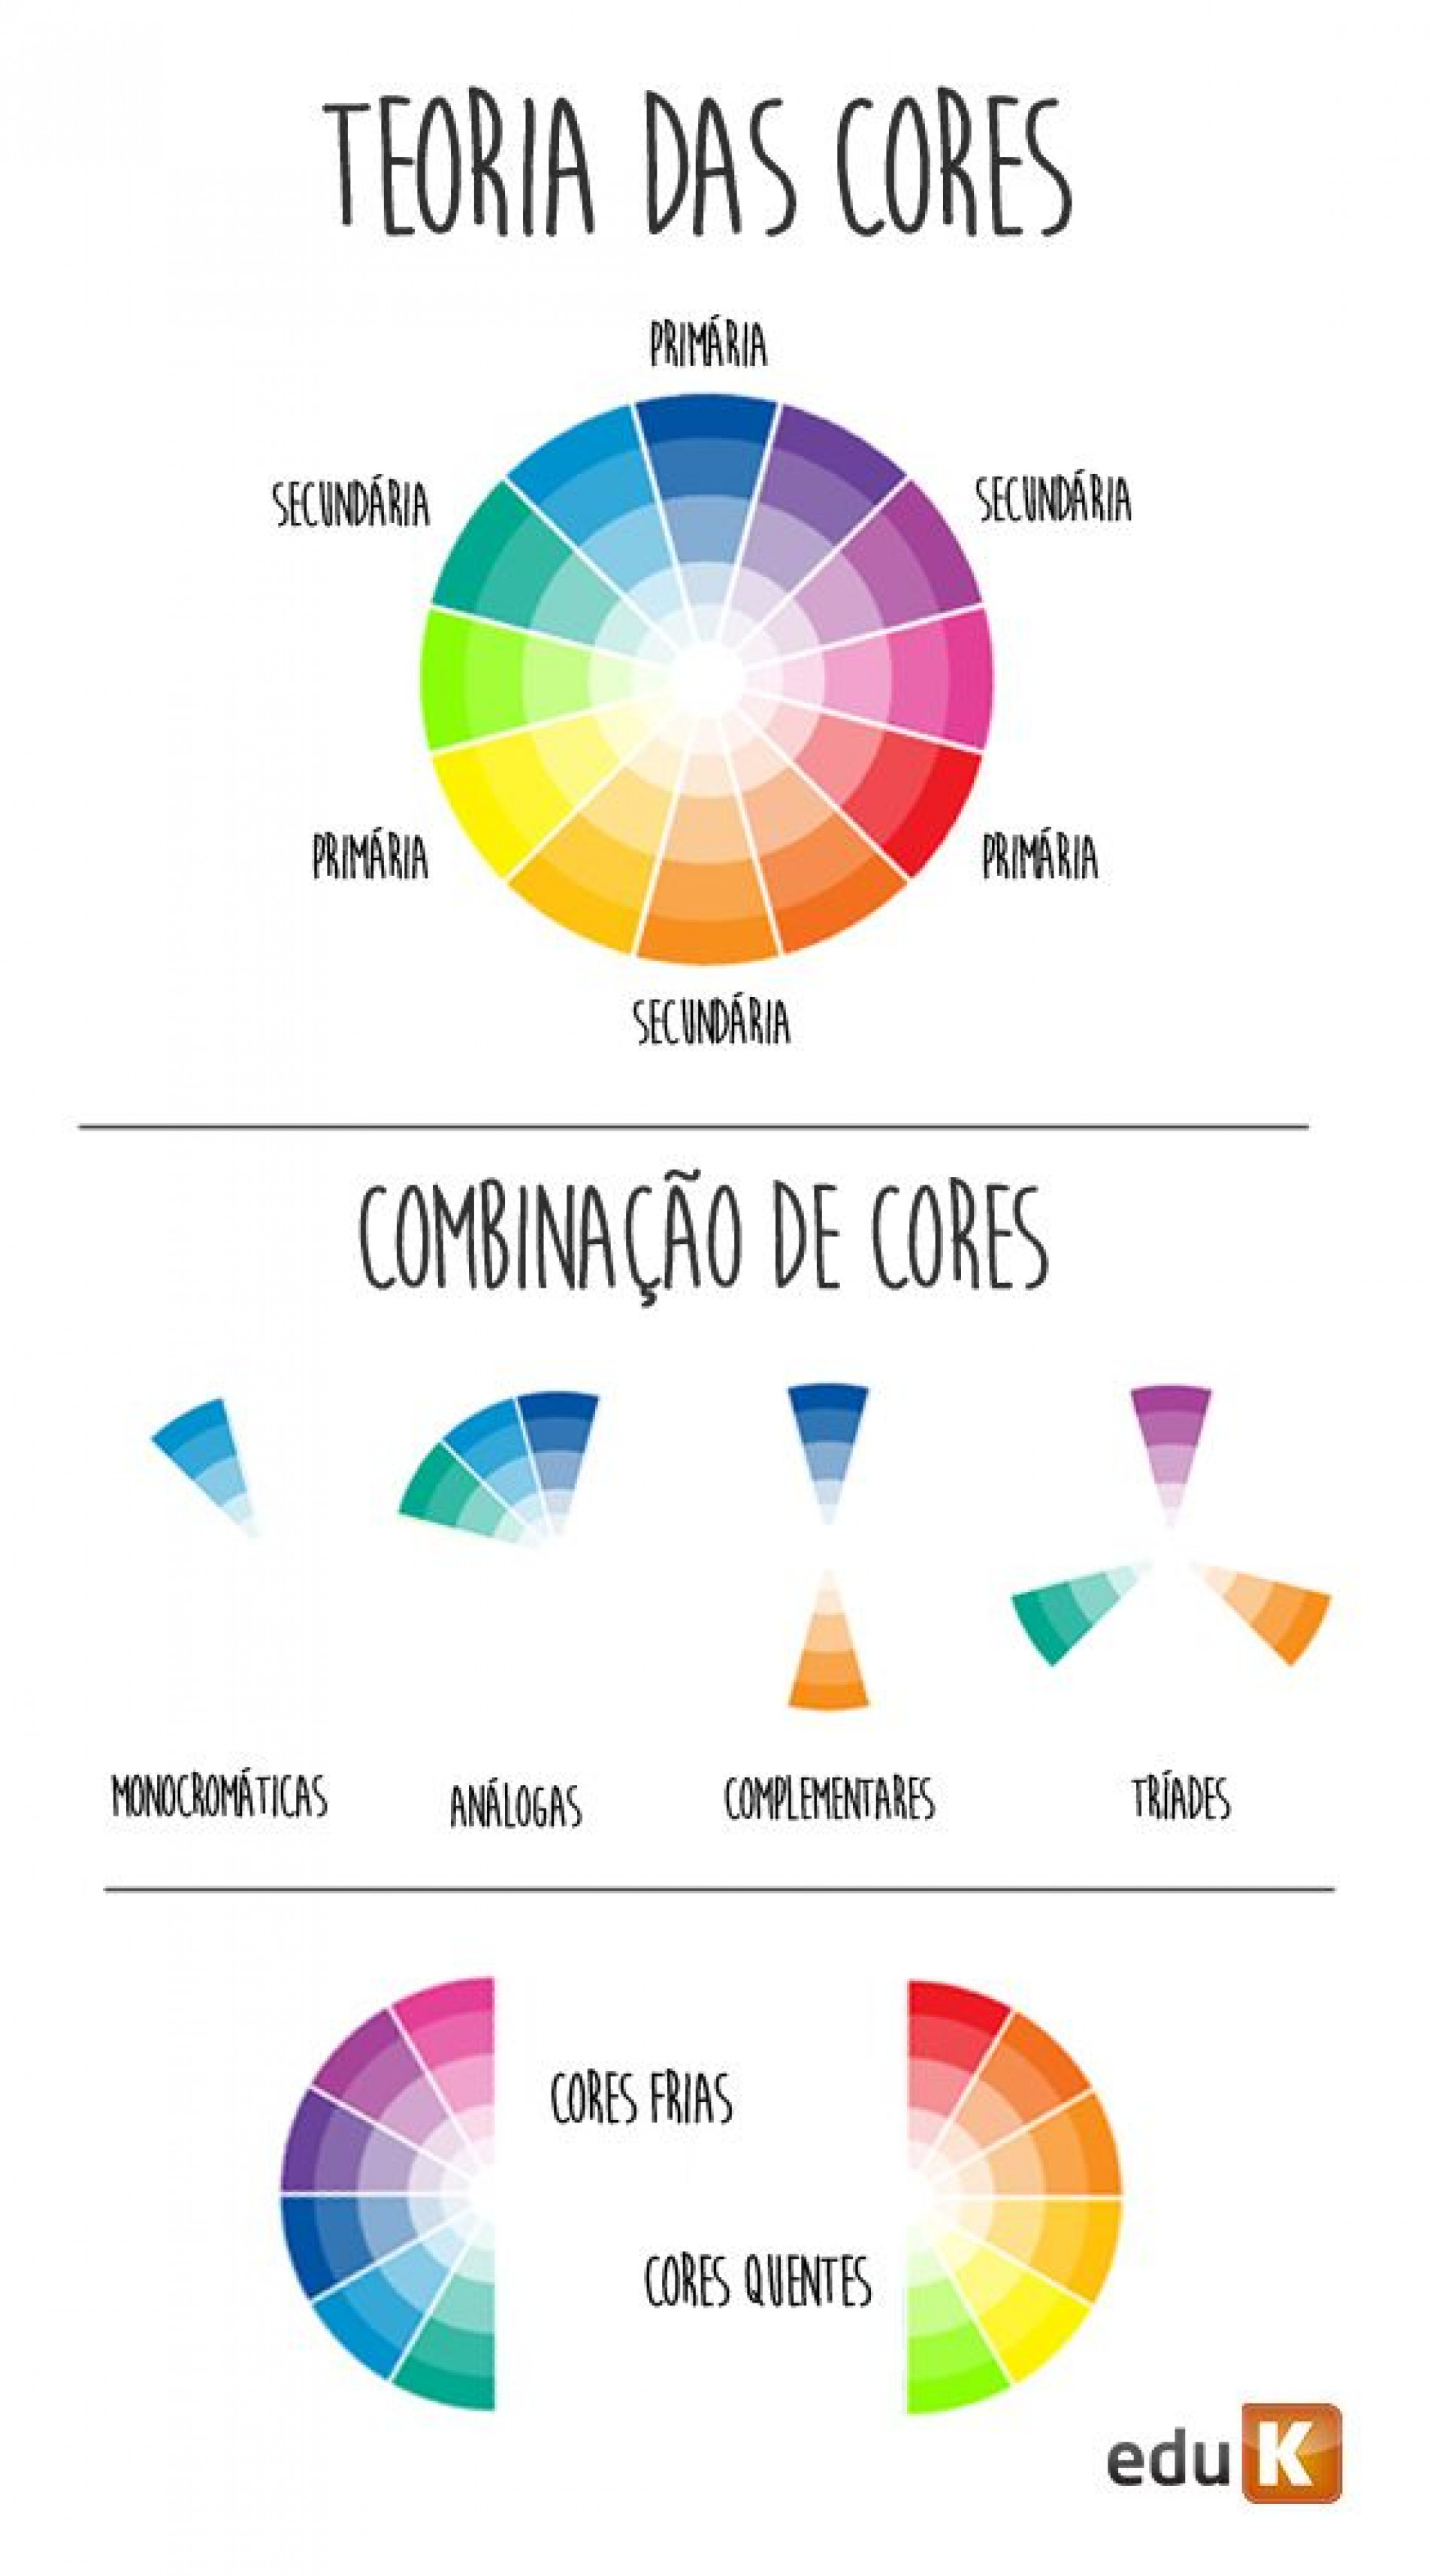 Harmonia das Cores – Saiba como misturar cores em seus looks (Parte I) -  Ana Ren